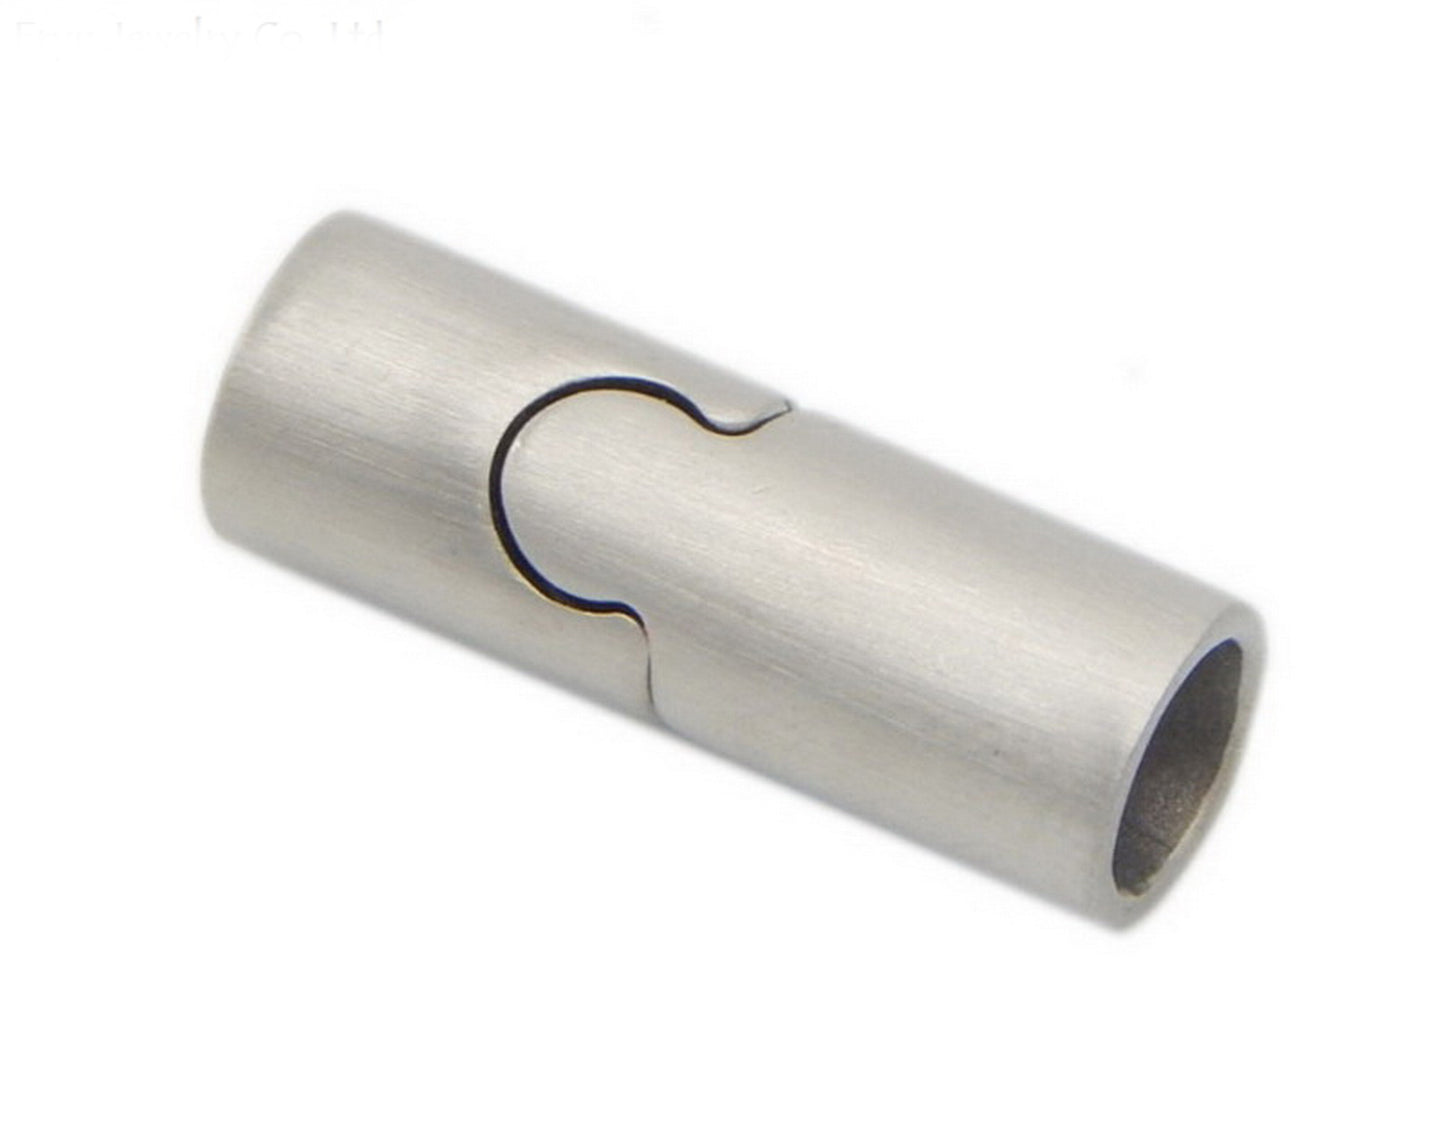 ShapesbyX-Magnetverschlüsse aus gebürstetem Edelstahl für die Schmuckherstellung, 3 mm, 4 mm, 5 mm, 6 mm, 8 mm